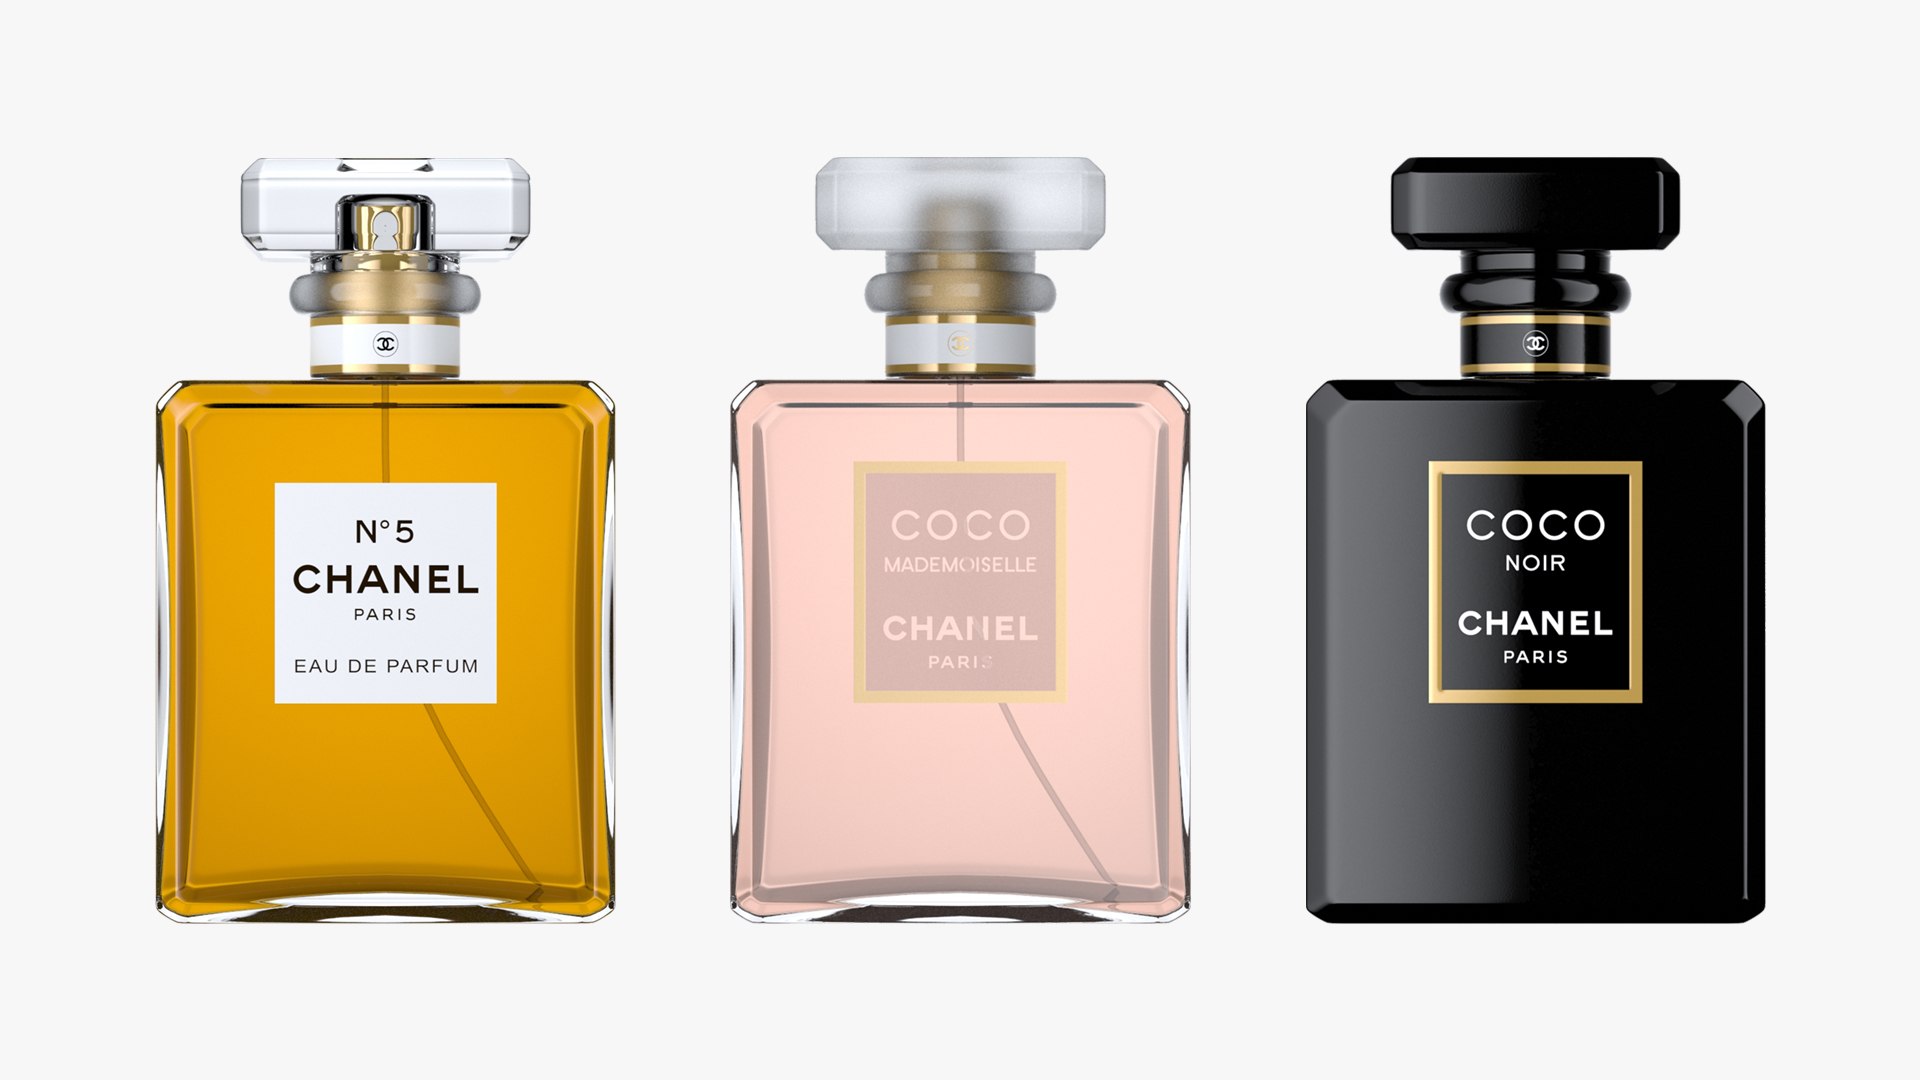 Chanel Perfume  Perfume bottles, Chanel perfume bottle, Chanel